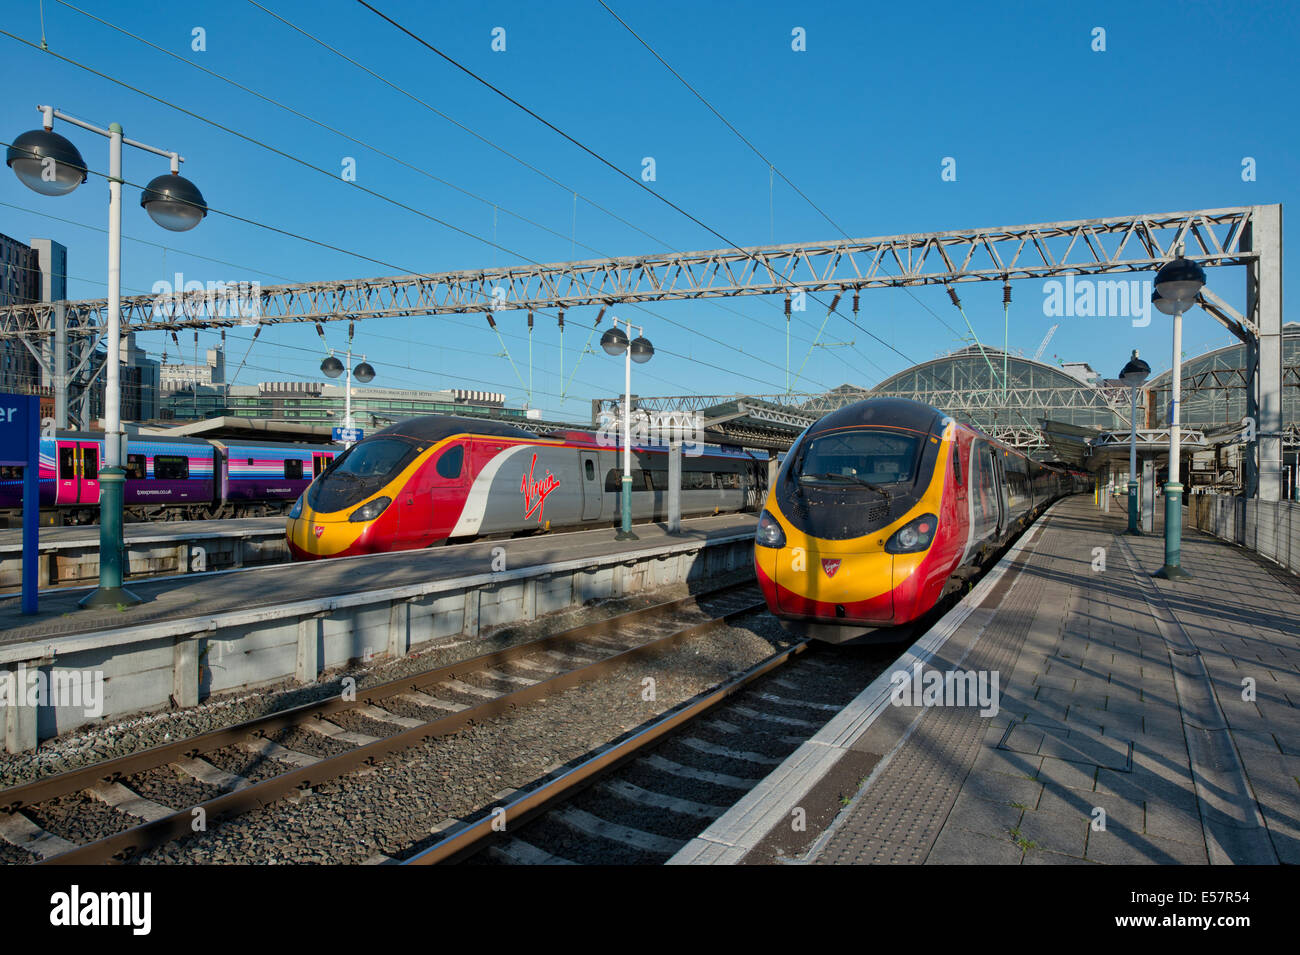 Due classe vergine 390 treni pendolino nelle piattaforme della stazione ferroviaria di Manchester Piccadilly. Foto Stock